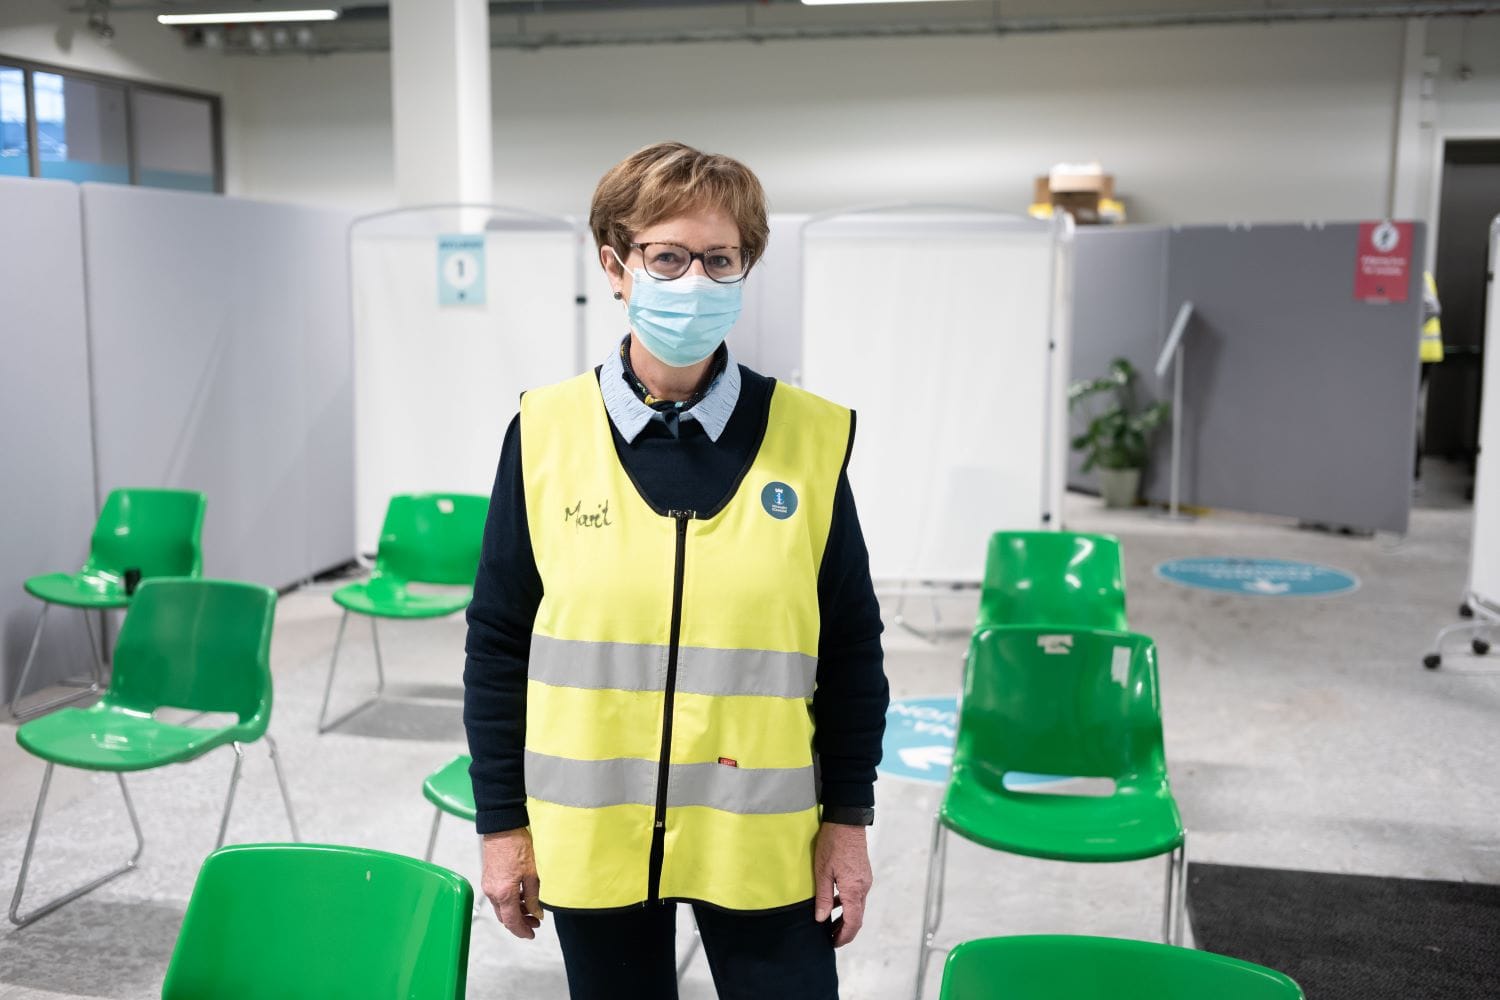 SYkeplier med vest og munnbind i vaksineringslokalen på GUlskogen. Bak henne står det grønne stoler.